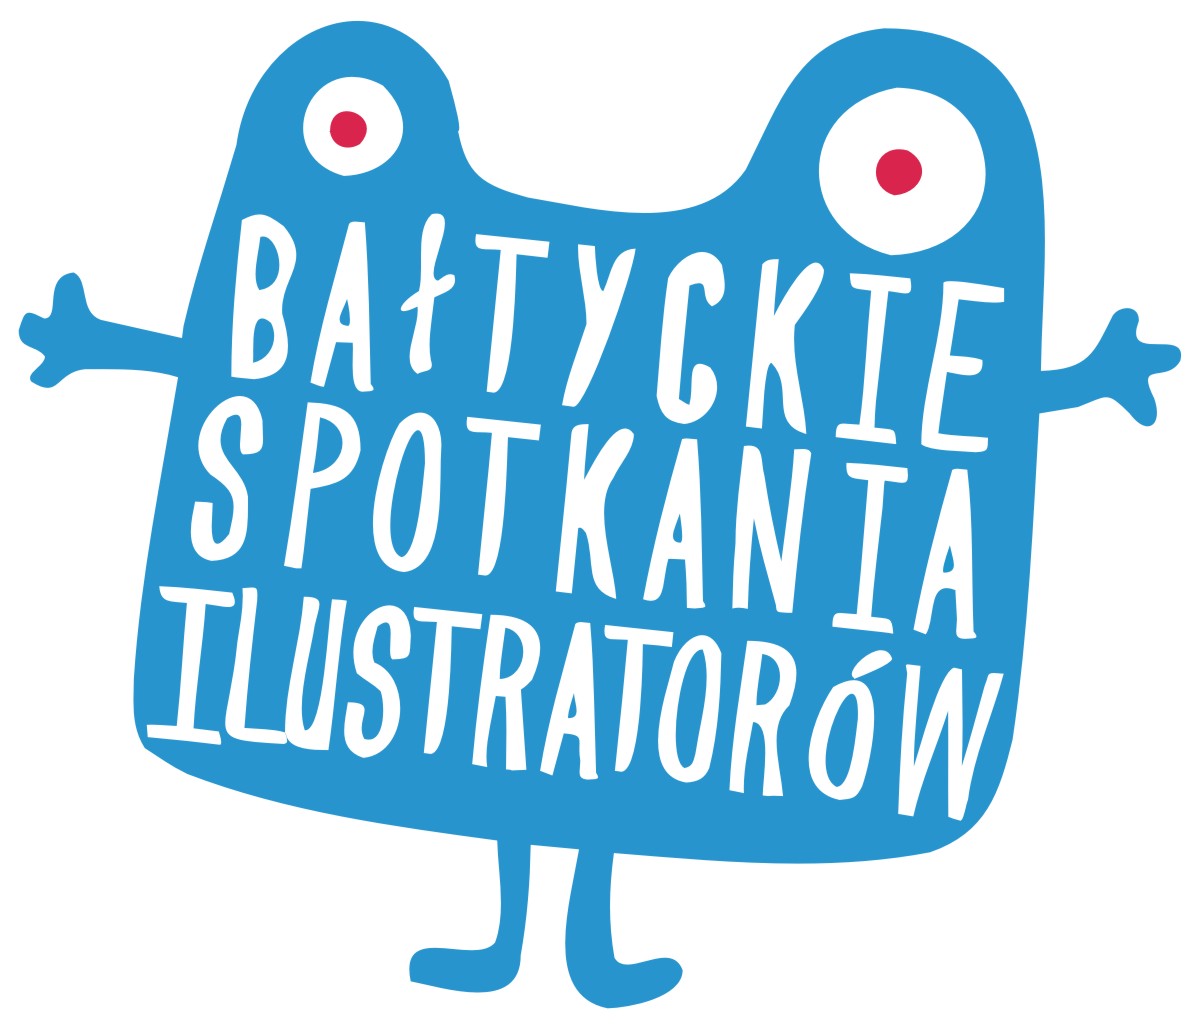 Bałtyckie Spotkania Ilustratorów – logo (źródło: materiały prasowe)